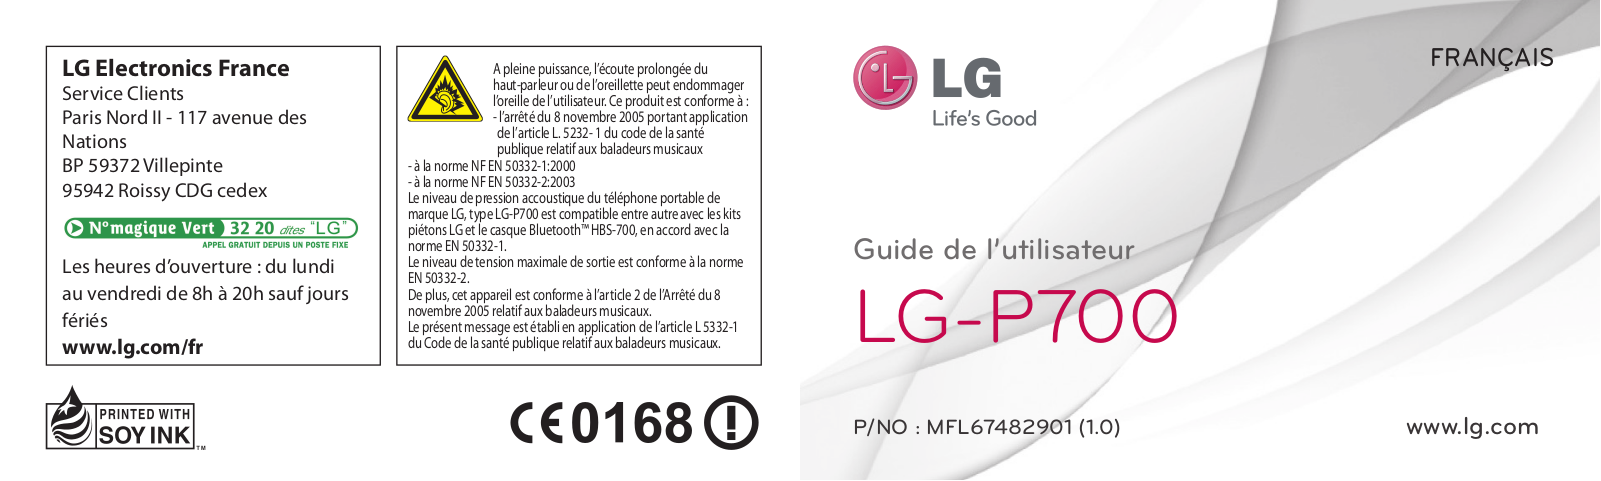 LG L7 P700 User Manual